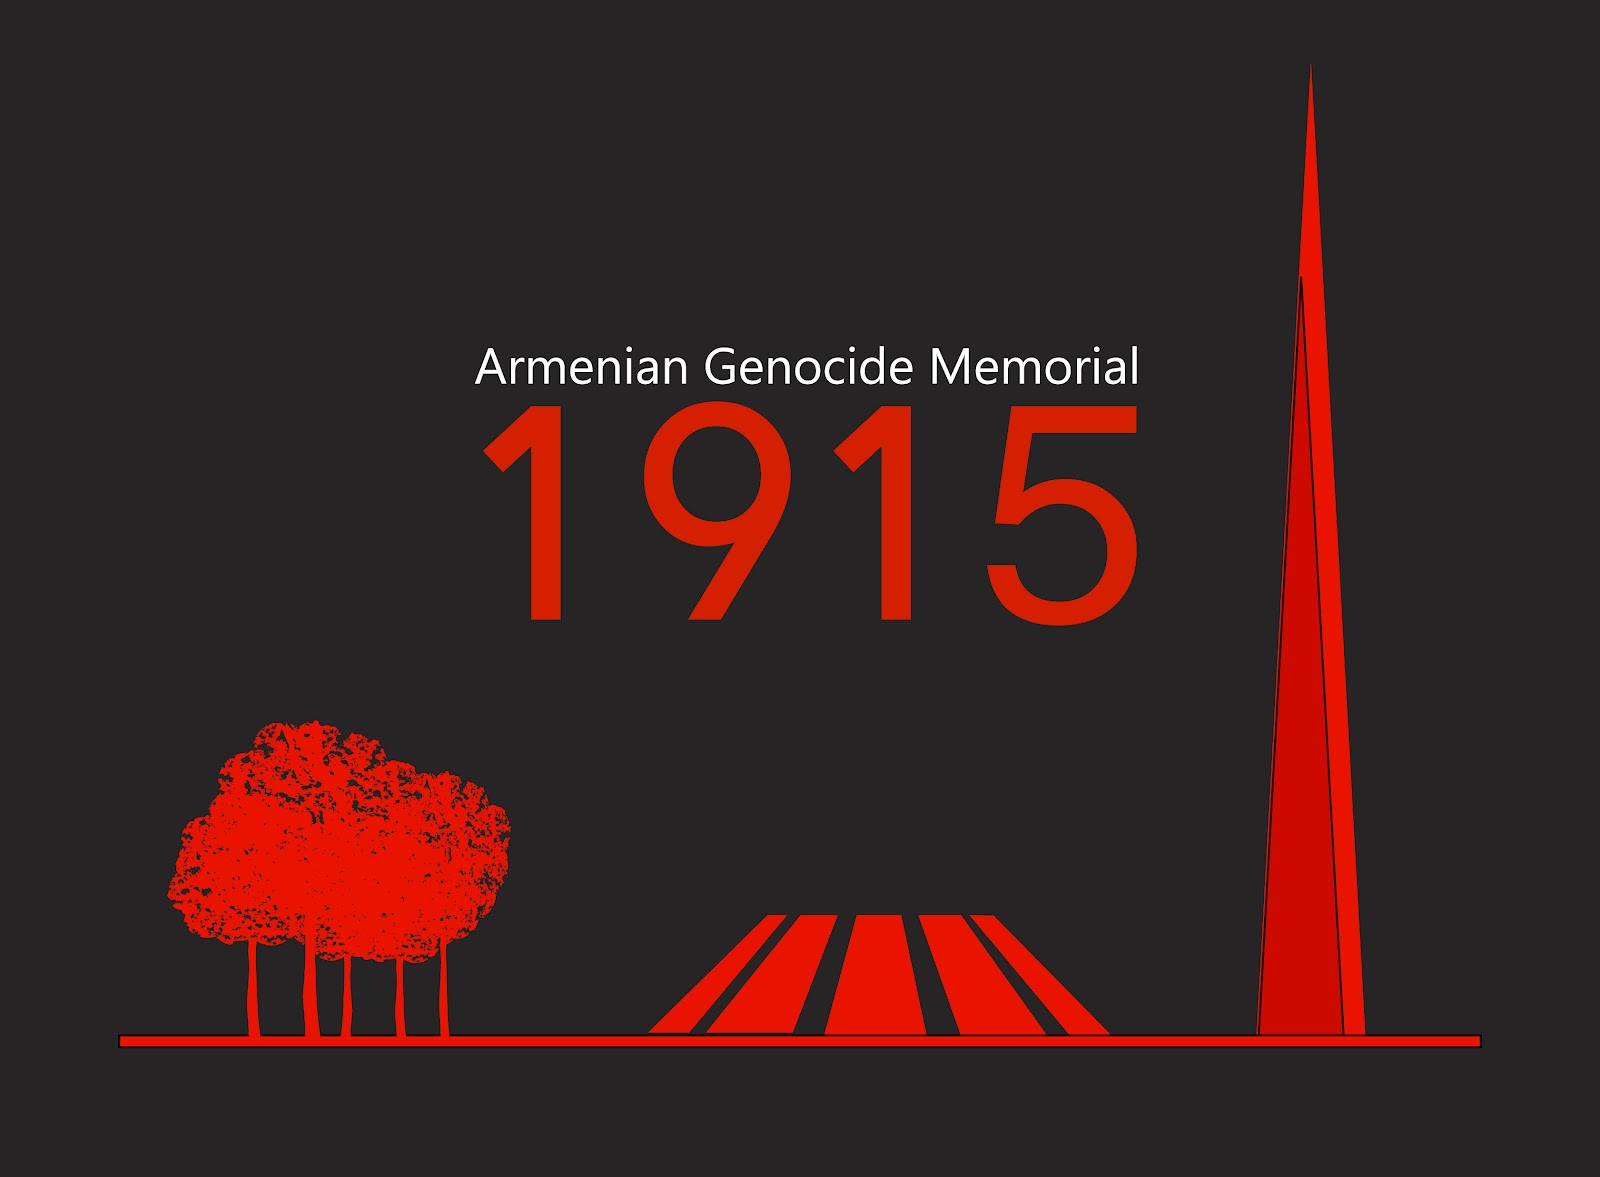 Ivrea de Italia reconoce genocidio armenio